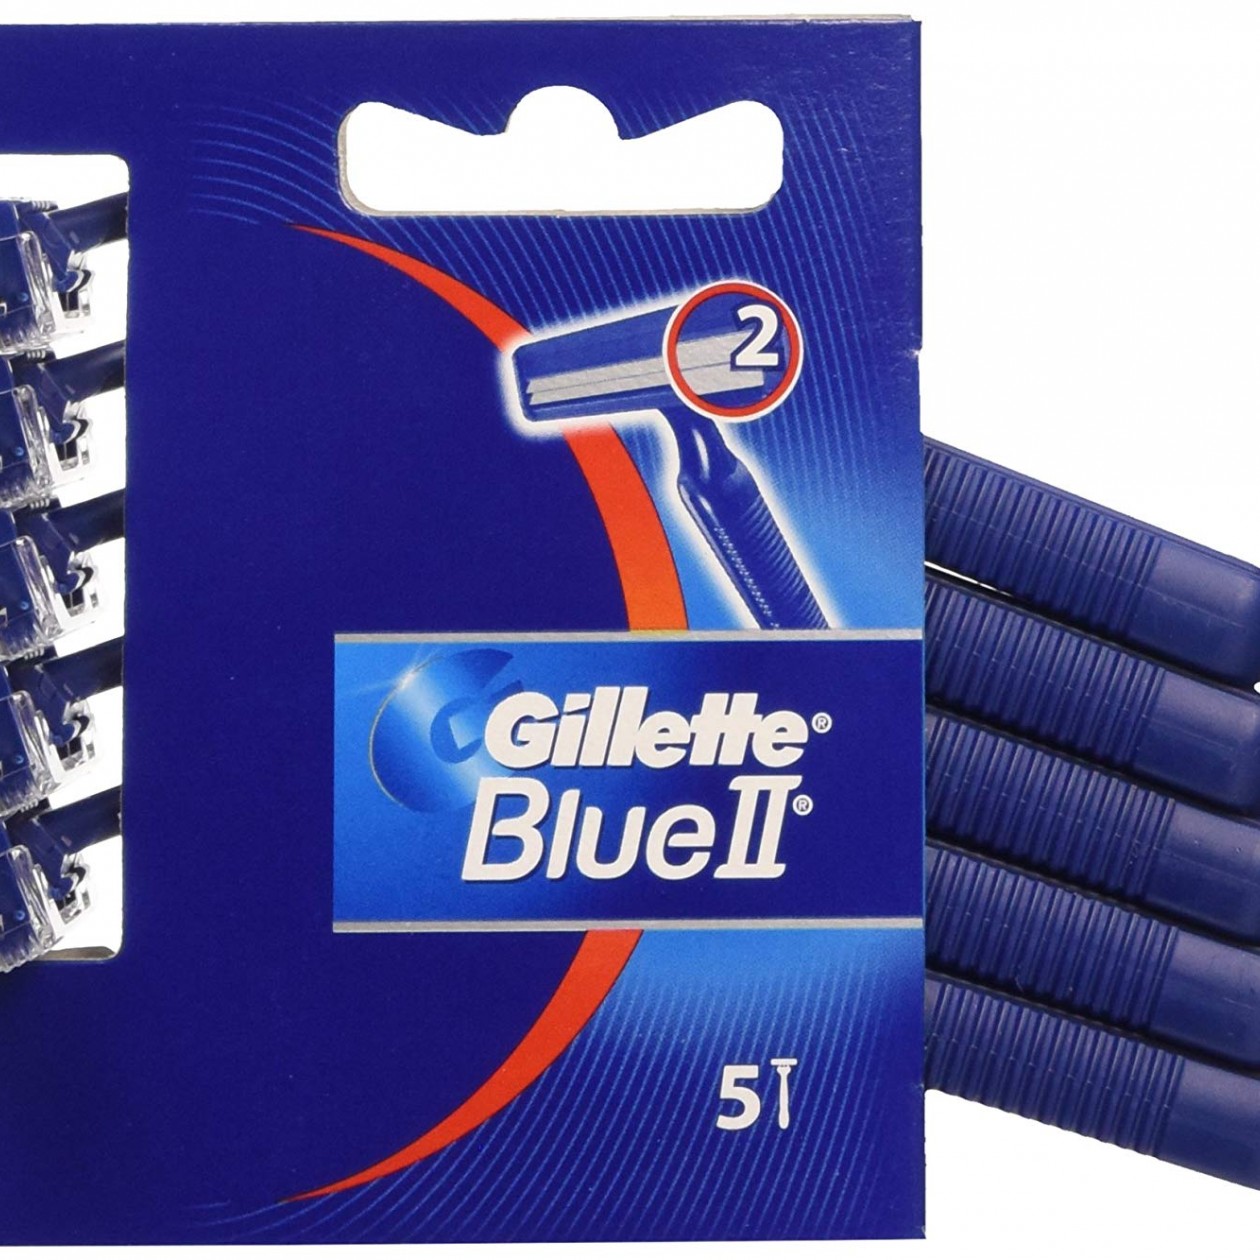 Gillette Blue II Disposable Razor 5X5